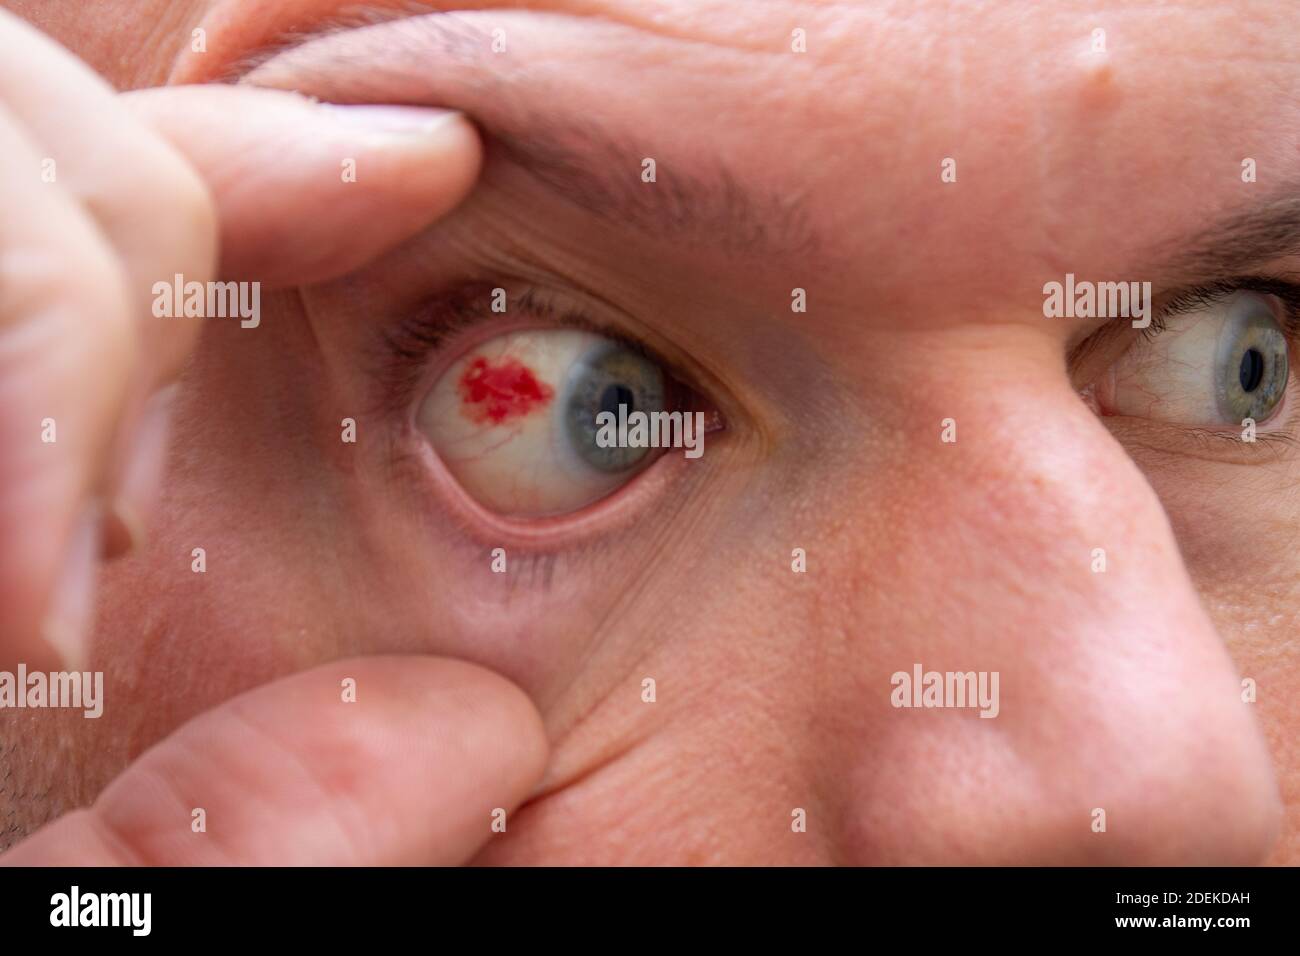 Wide Open menschliche Auge mit leuchtend roten Arterien schließen oben.  Reizung und Rötung des Auges. Schüler, Iris, Wimpern in Makro  Stockfotografie - Alamy